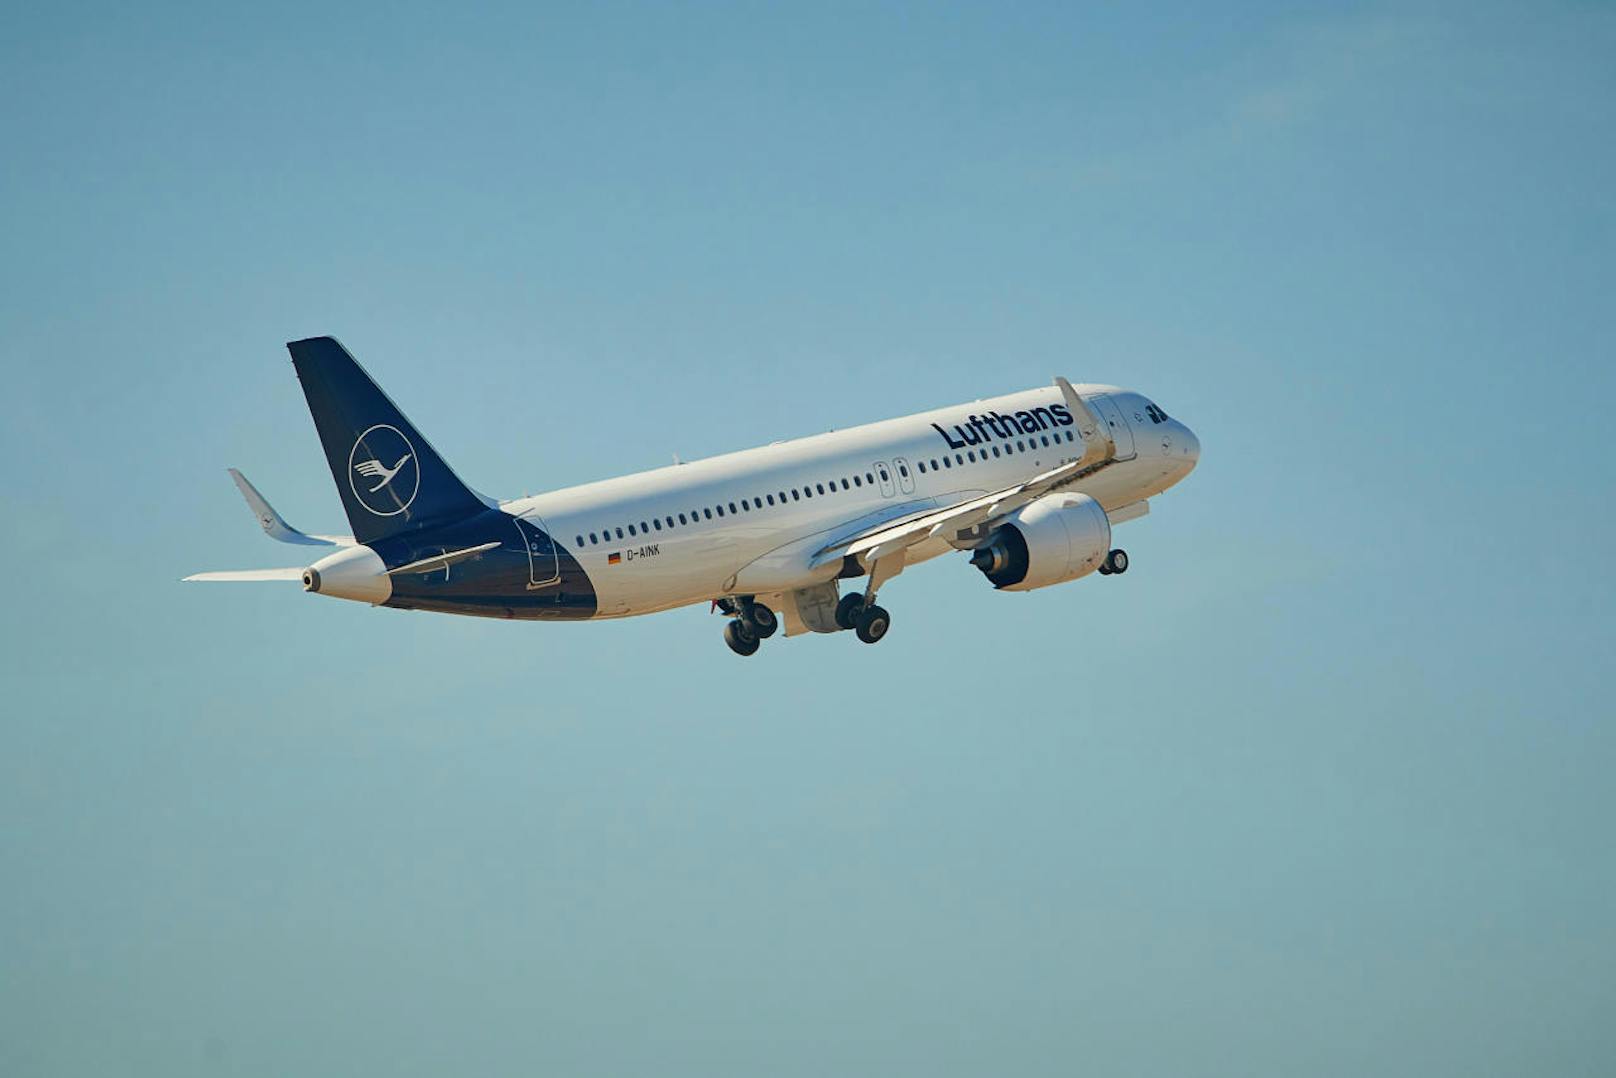 Gemessen an der Anzahl der beförderten Passagiere gilt der Konzern als größtes Luftverkehrsunternehmen Europas.